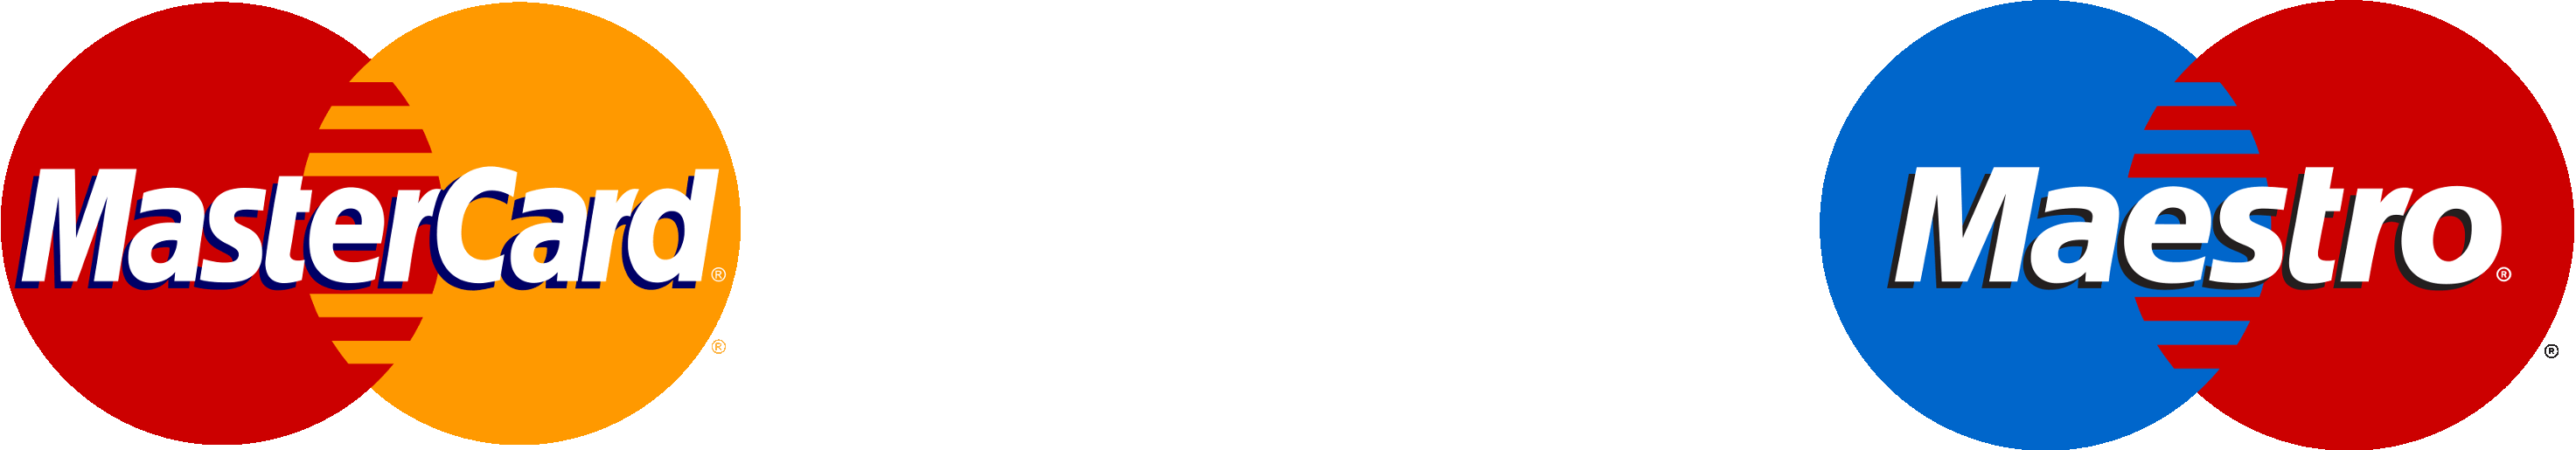 Accettiamo Mastercard, Visa e Maestro